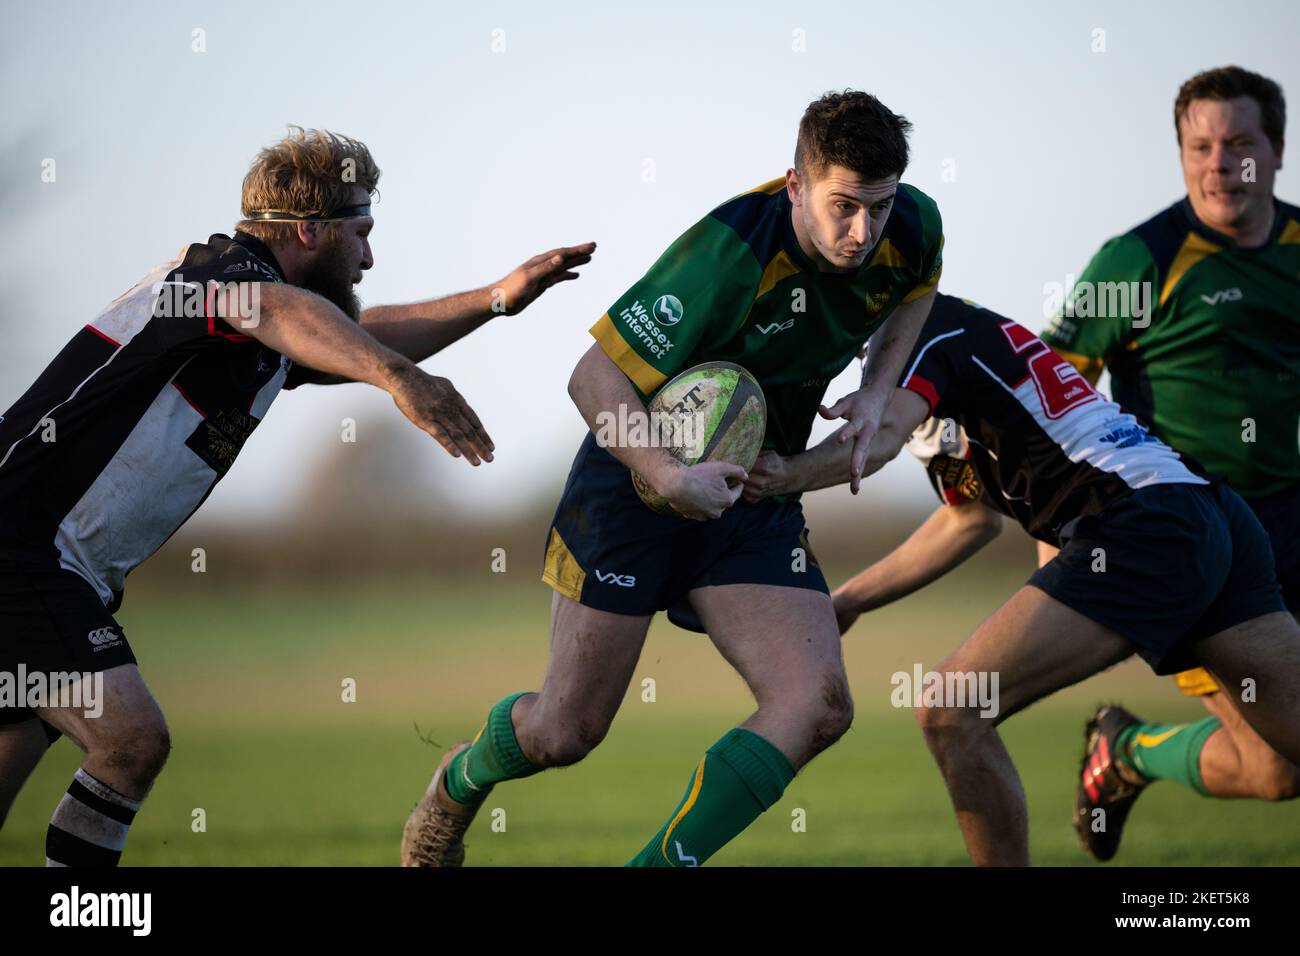 Giocatori di rugby in azione. Dorset, Inghilterra, Regno Unito. Foto Stock